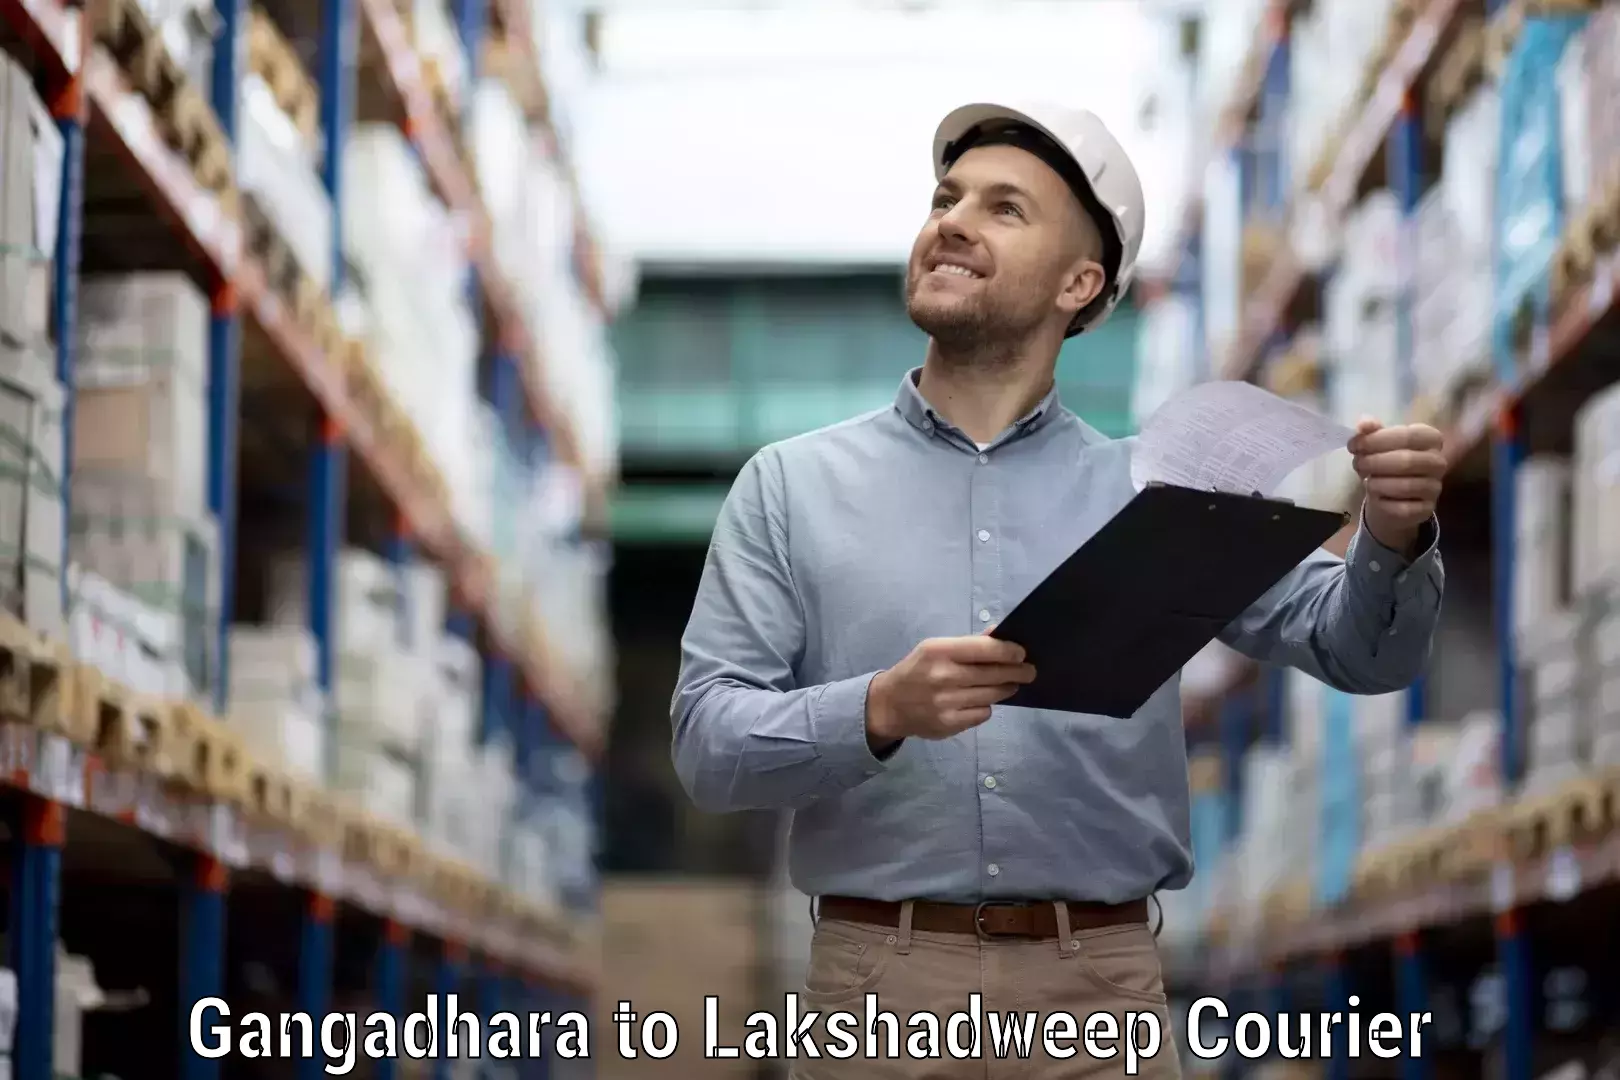 Optimized shipping services Gangadhara to Lakshadweep